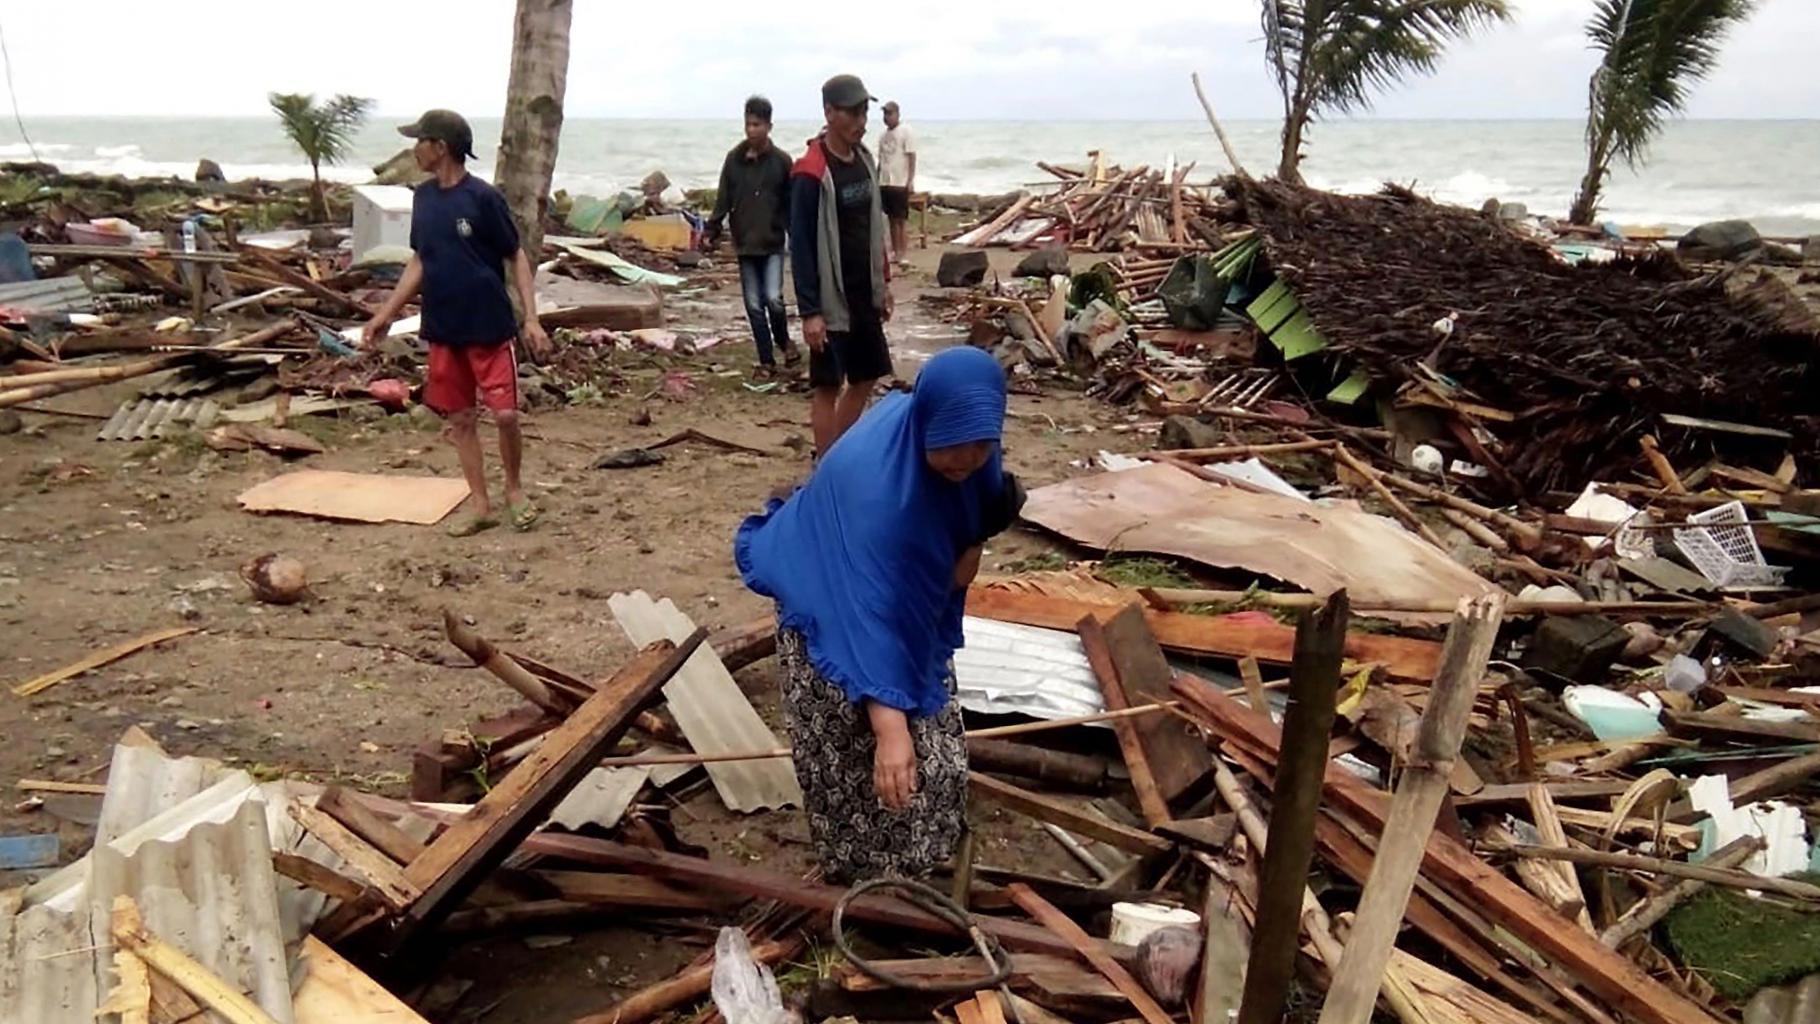 Bewohner inspizieren die Schäden an ihren Häusern am Strand von Carita, nachdem das Gebiet am 22. Dezember von einem Tsunami heimgesucht wurde.